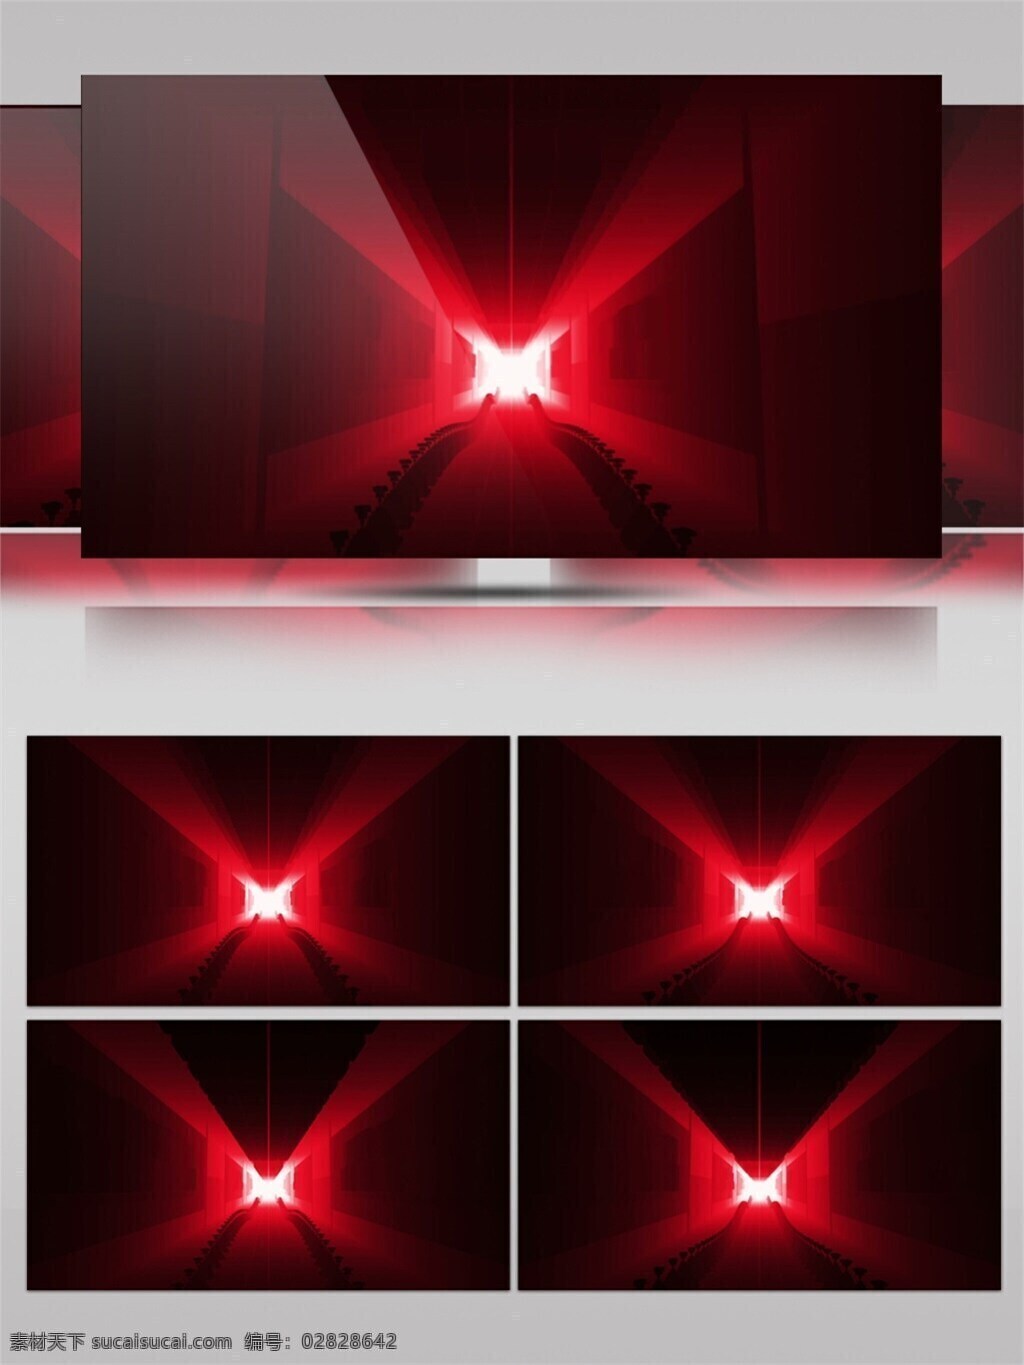 光芒红色 红光闪闪 特效视频素材 红色 闪光 动态 视频 绚丽光删 生活 实用 背景